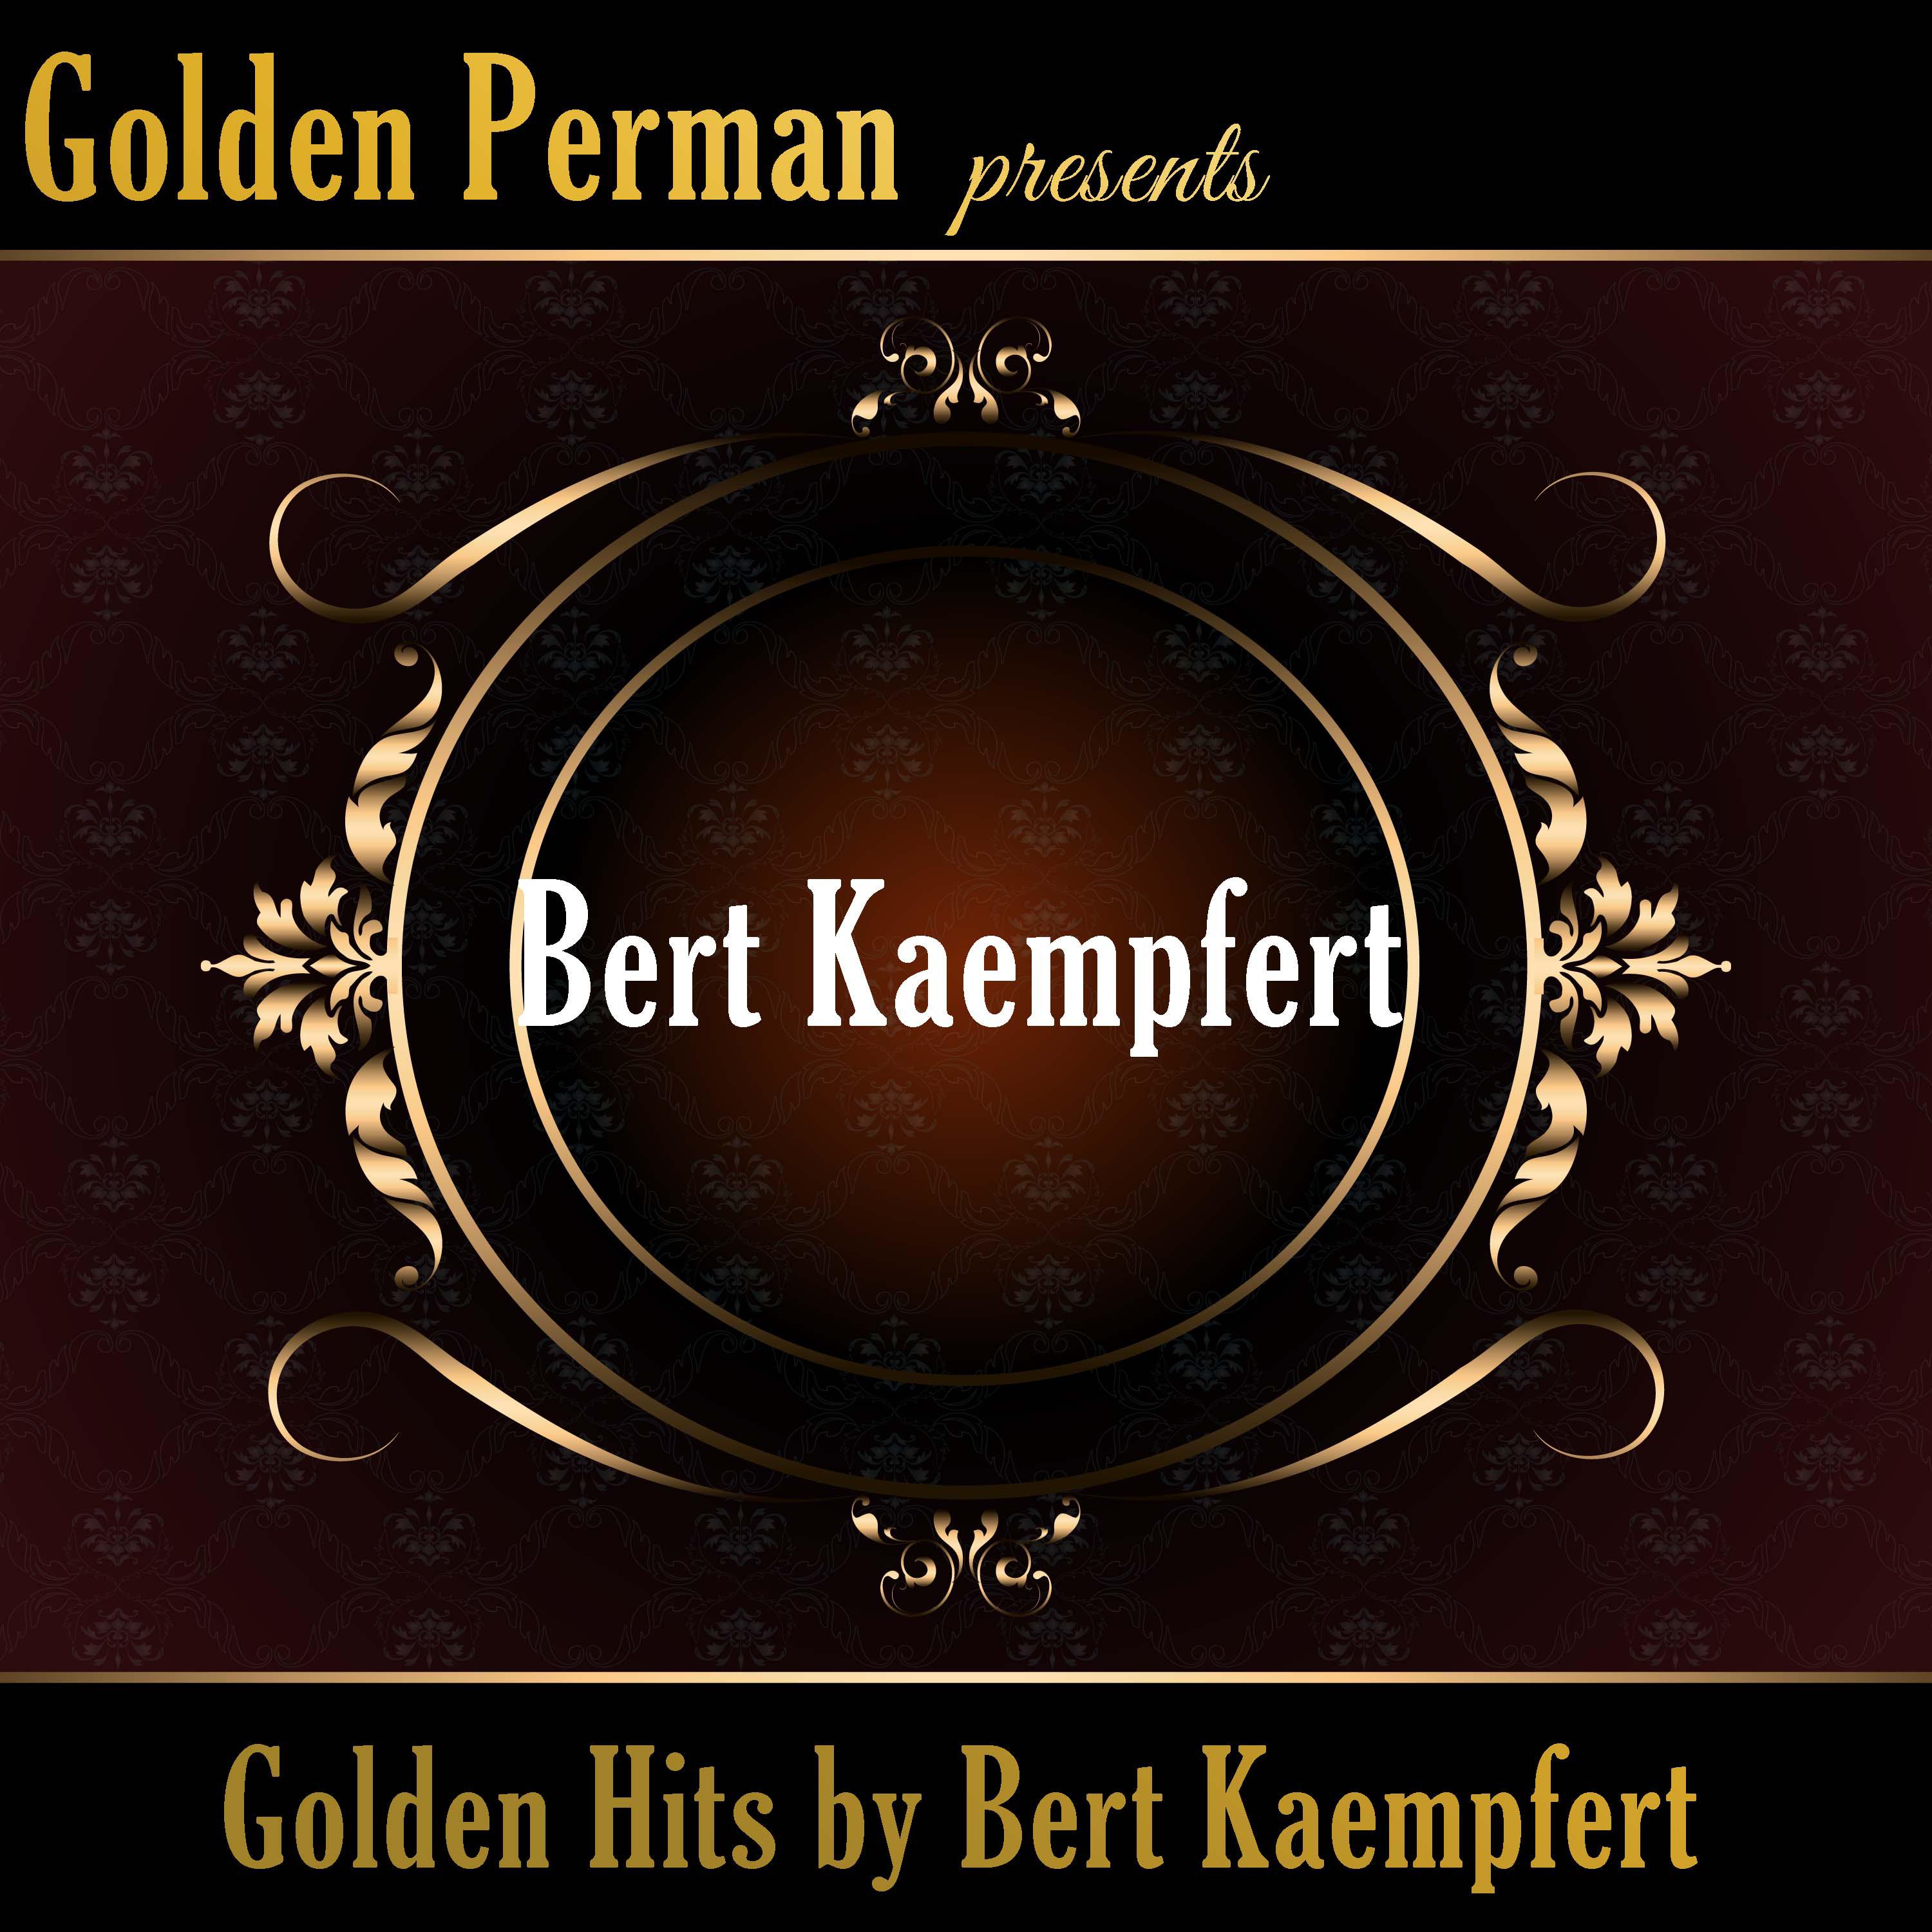 Golden Hits by Bert Kaempfert